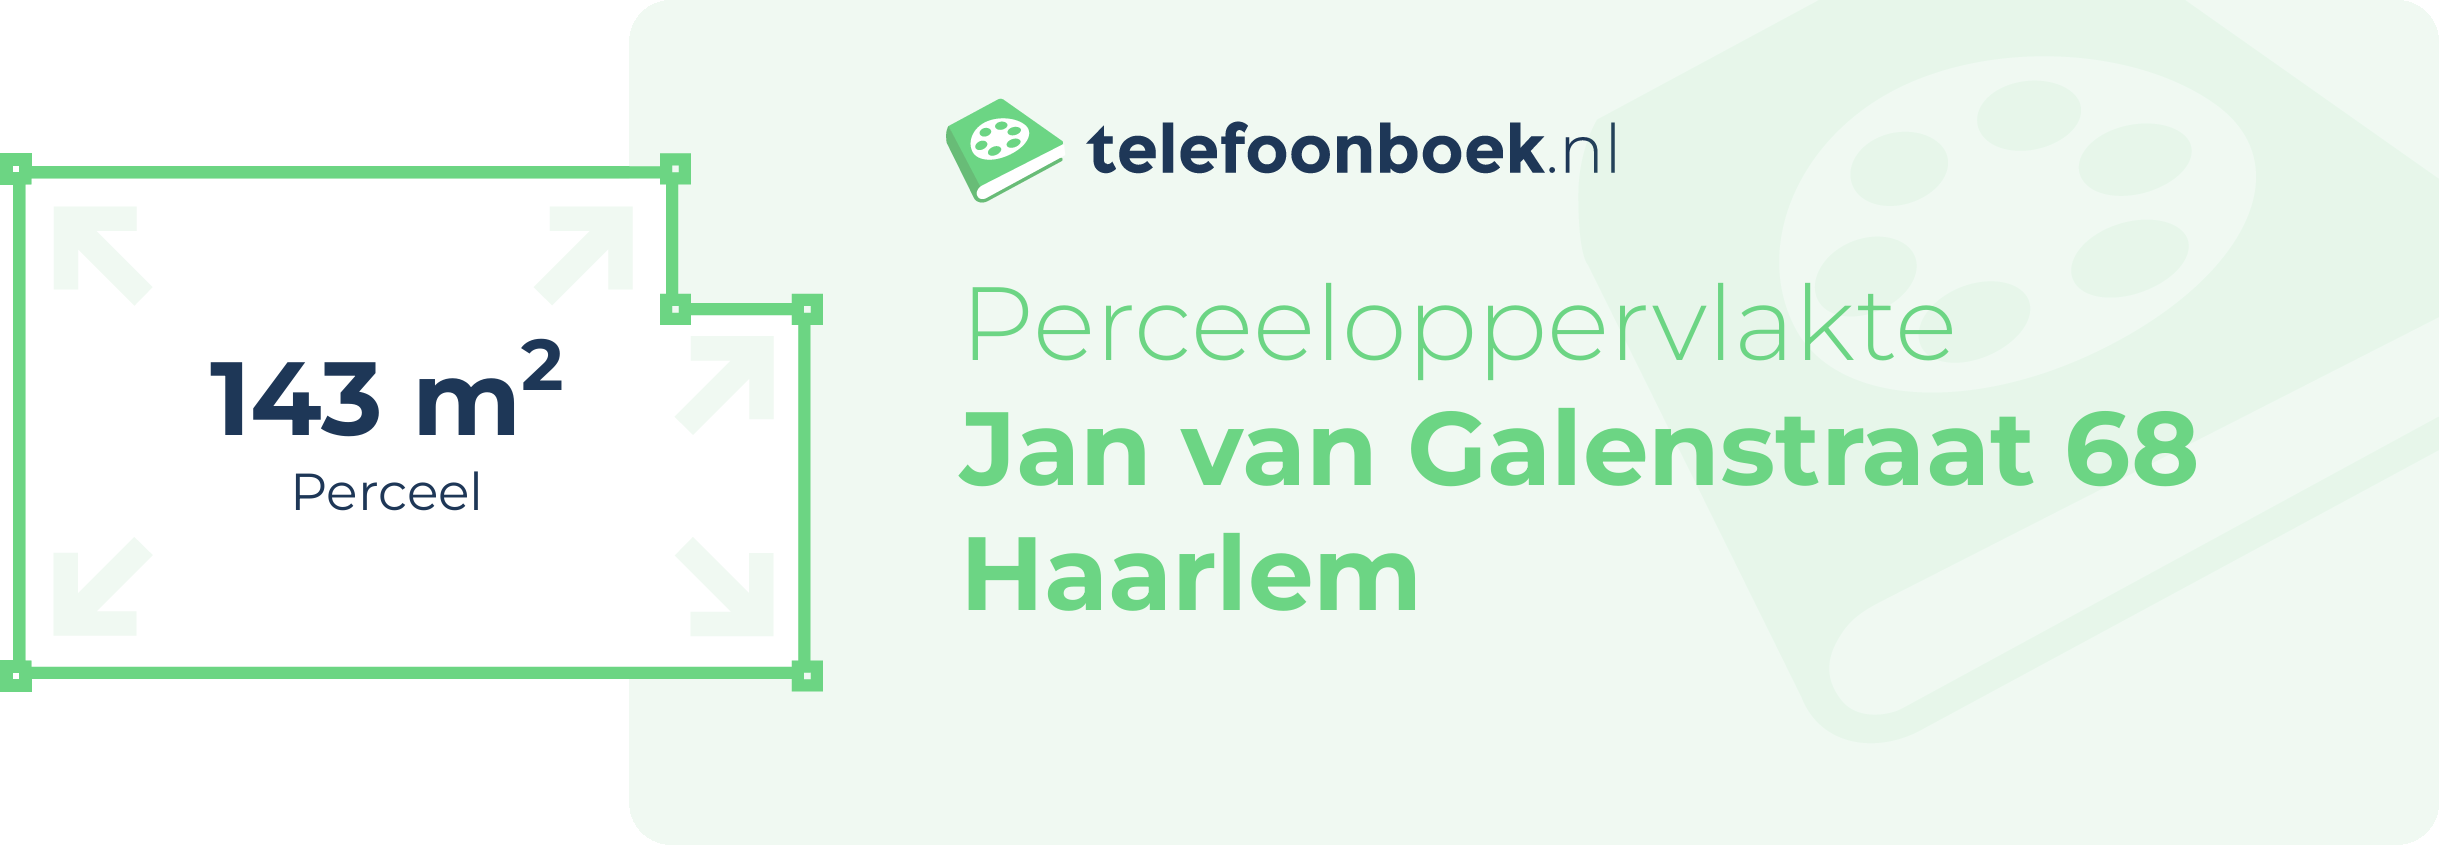 Perceeloppervlakte Jan Van Galenstraat 68 Haarlem